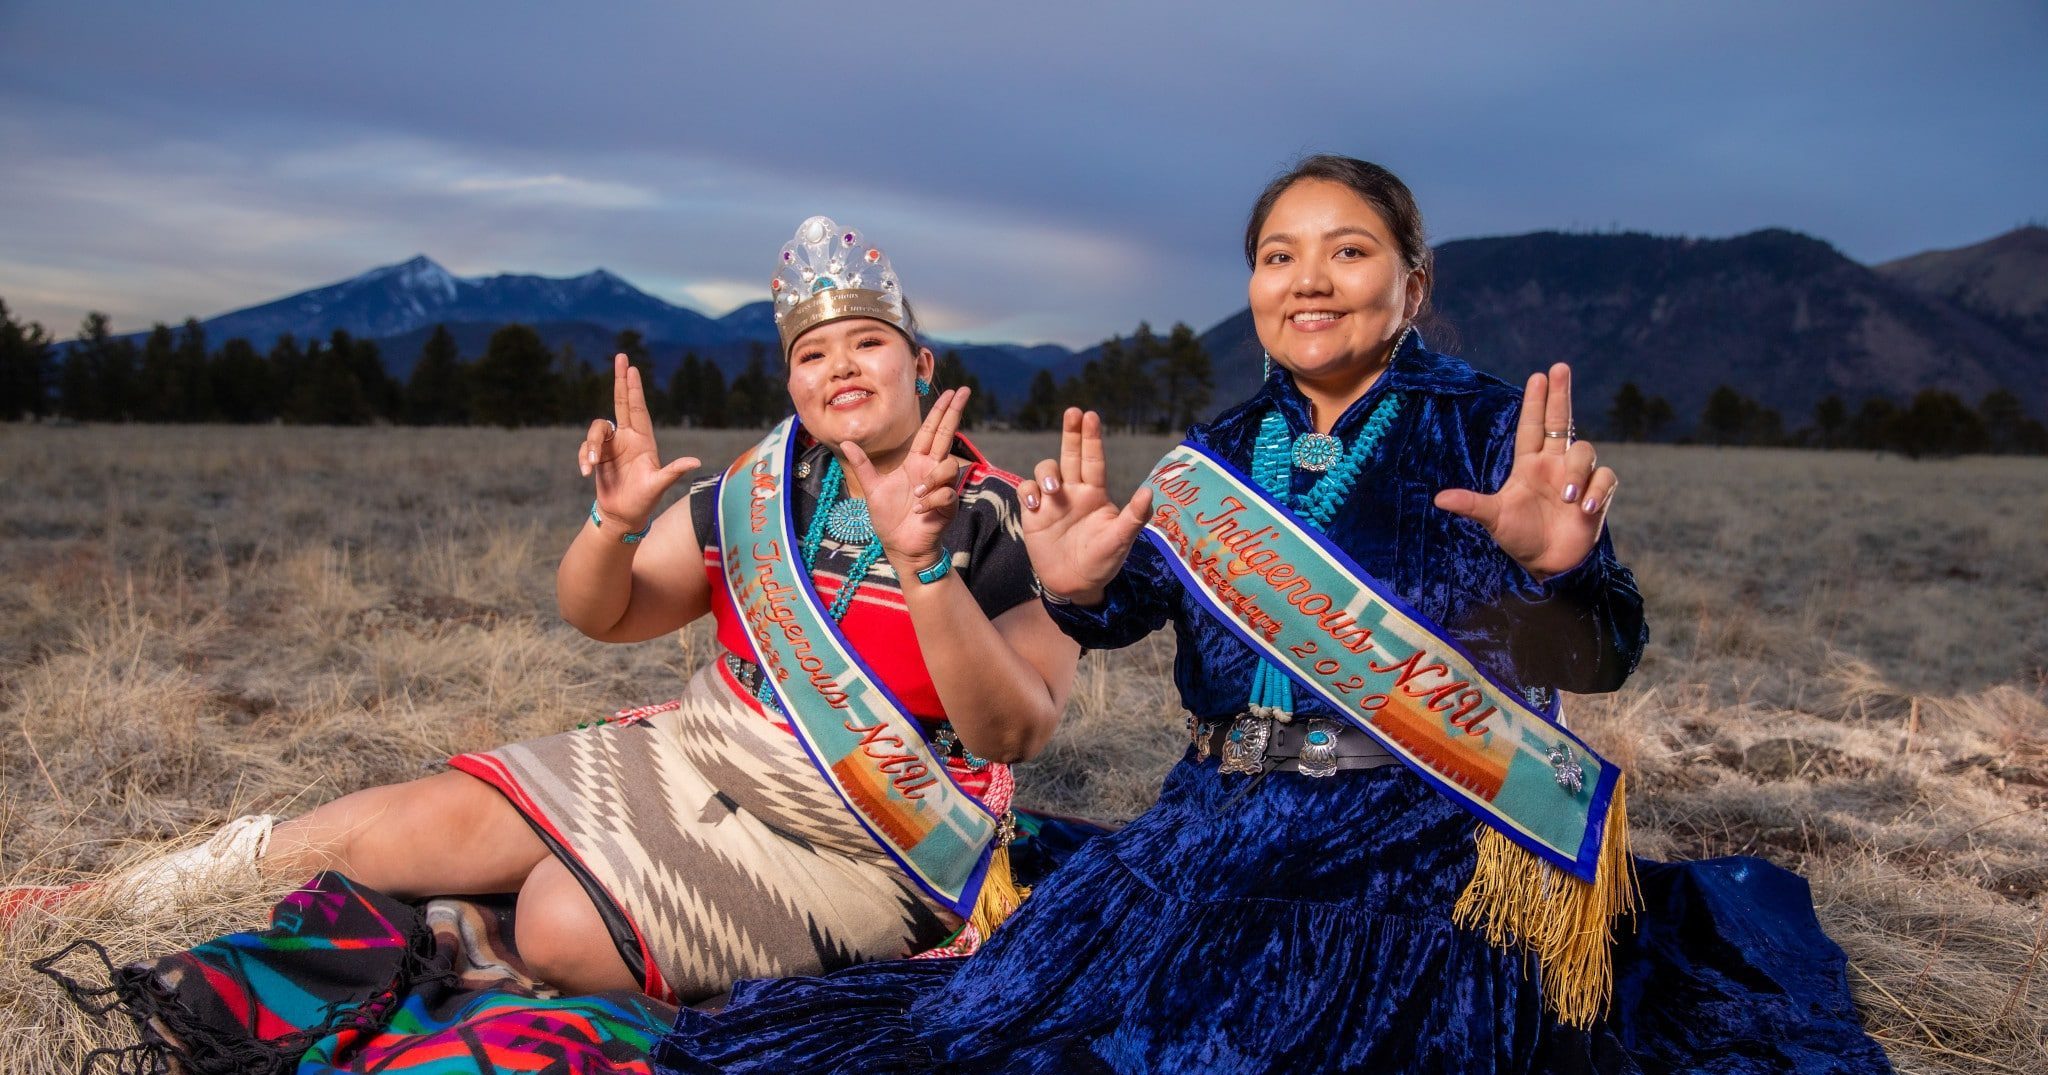 Dos mujeres en vestuario tradicional de Nativos Americanos sentadas en un prado enfrente de los San Francisco Peaks.